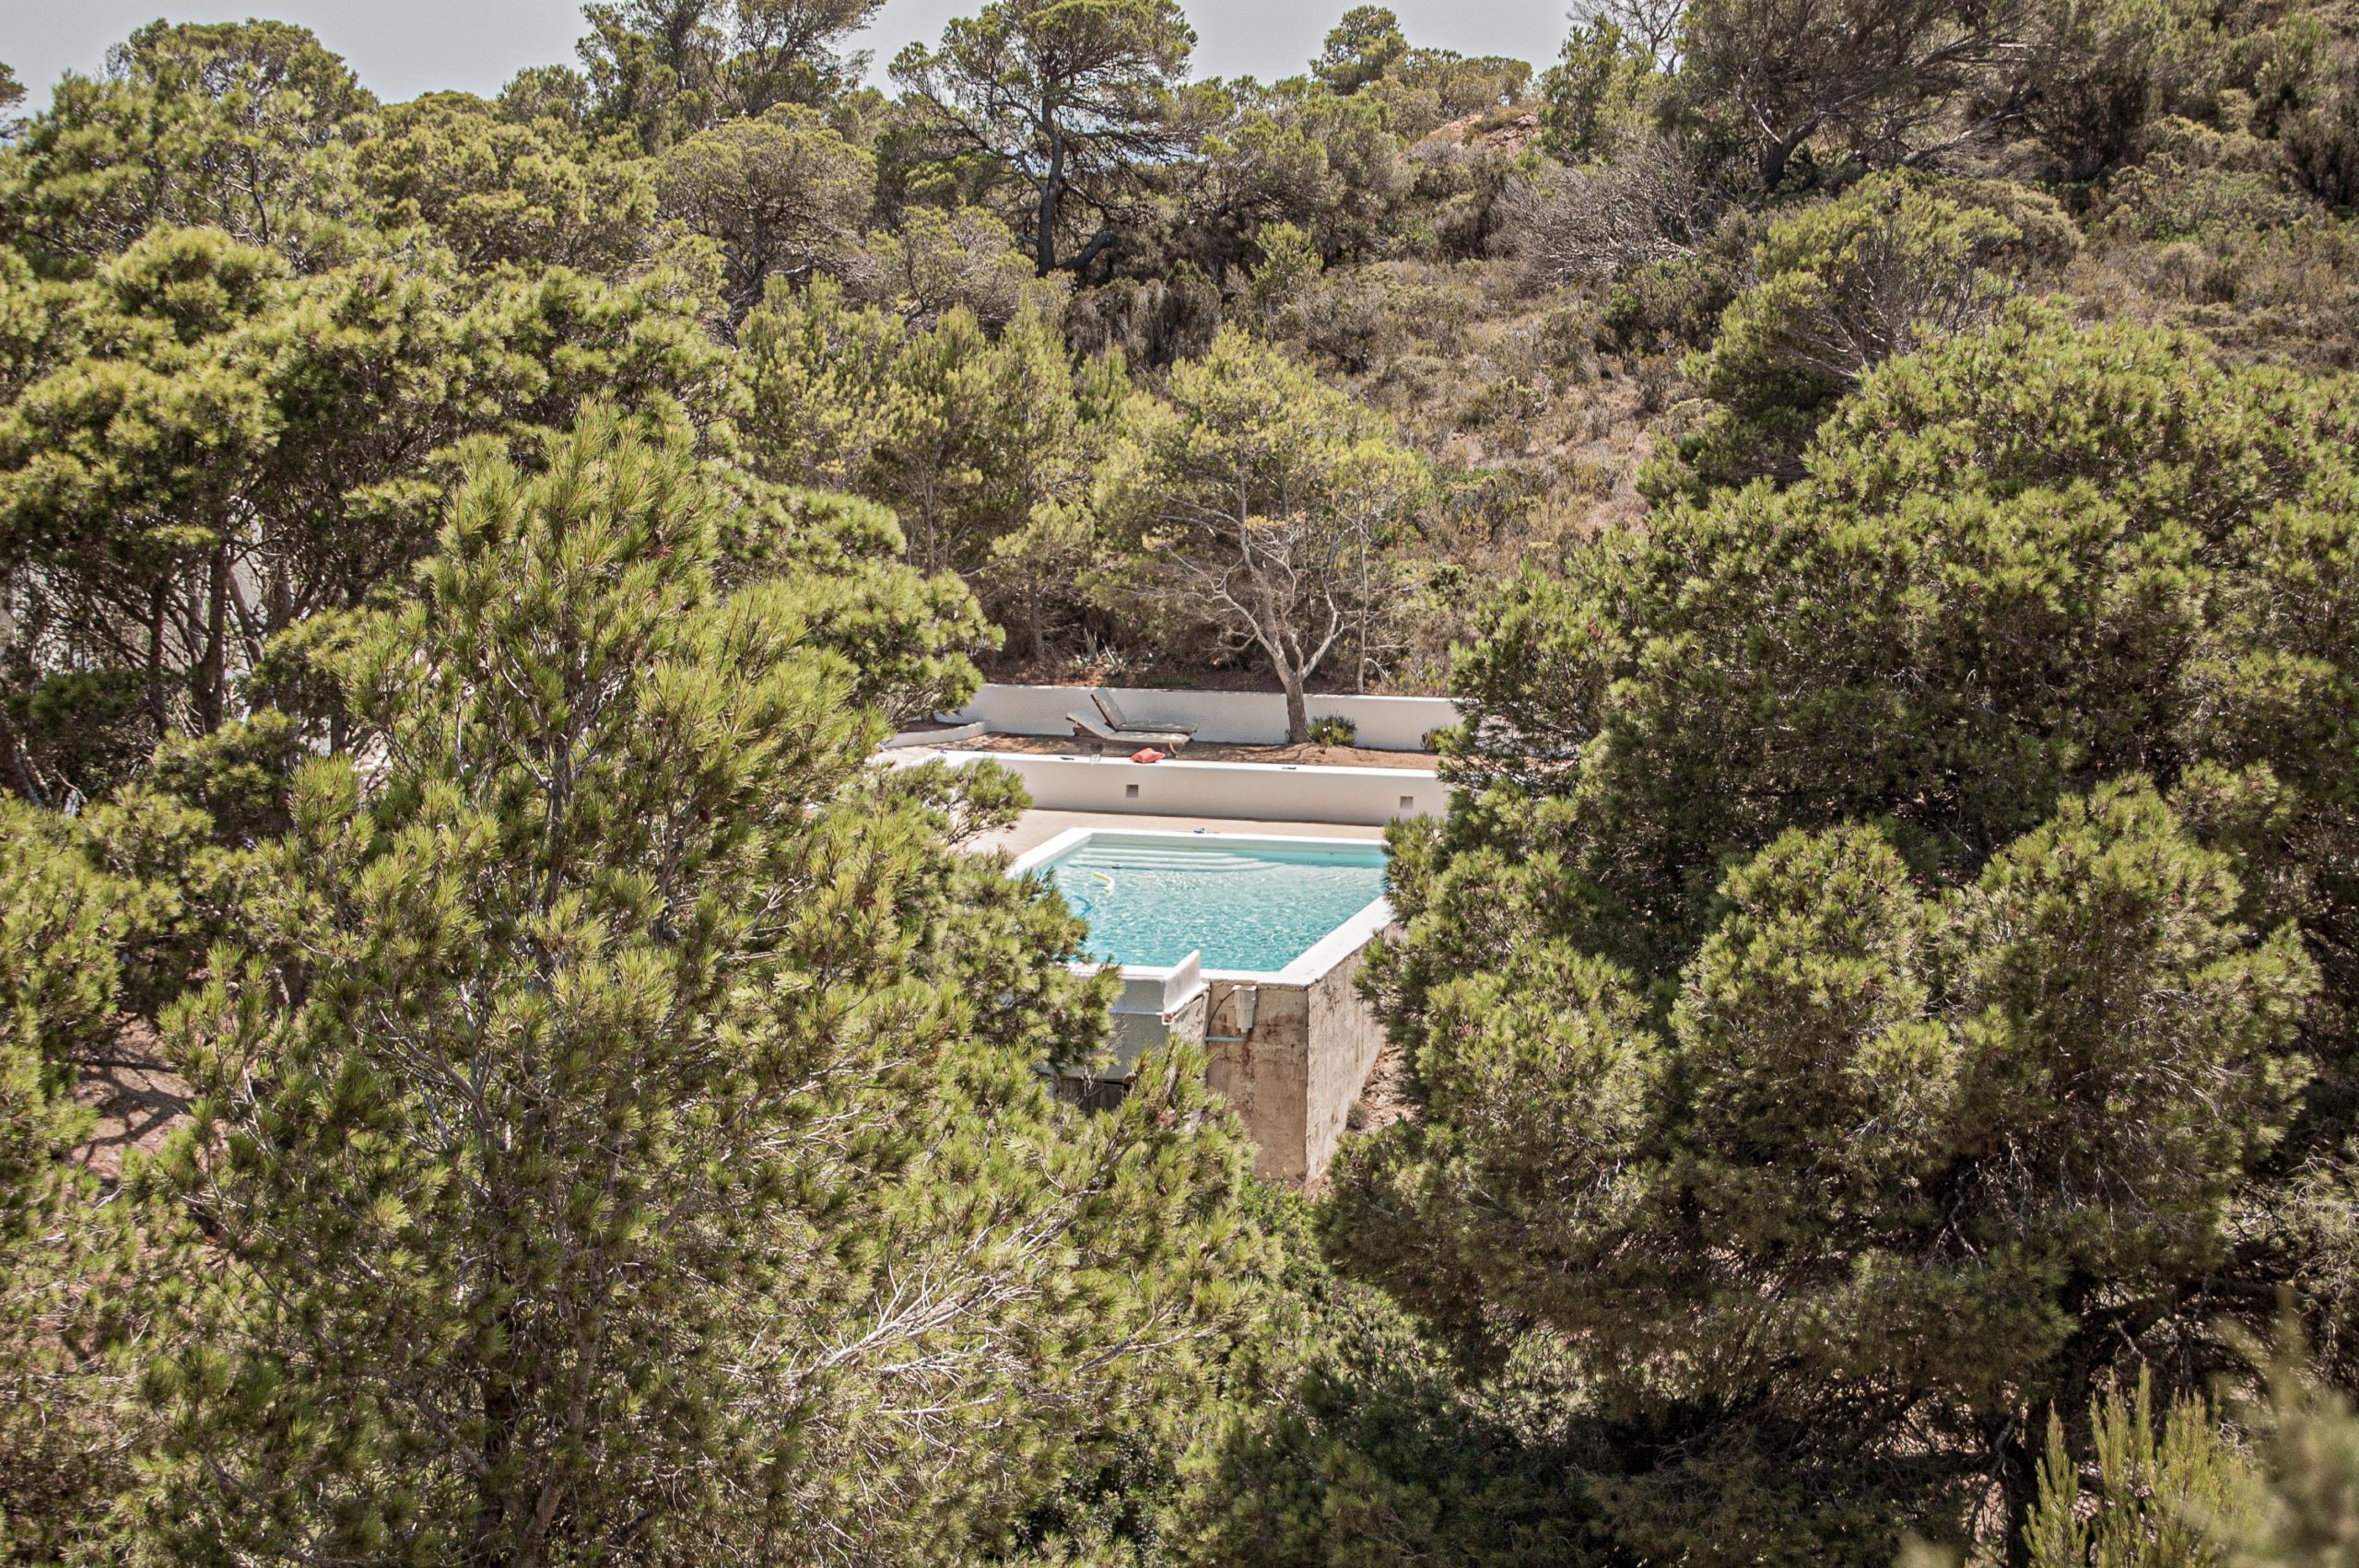 Lire la suite à propos de l’article Pourquoi investir dans l’immobilier à Ibiza ?